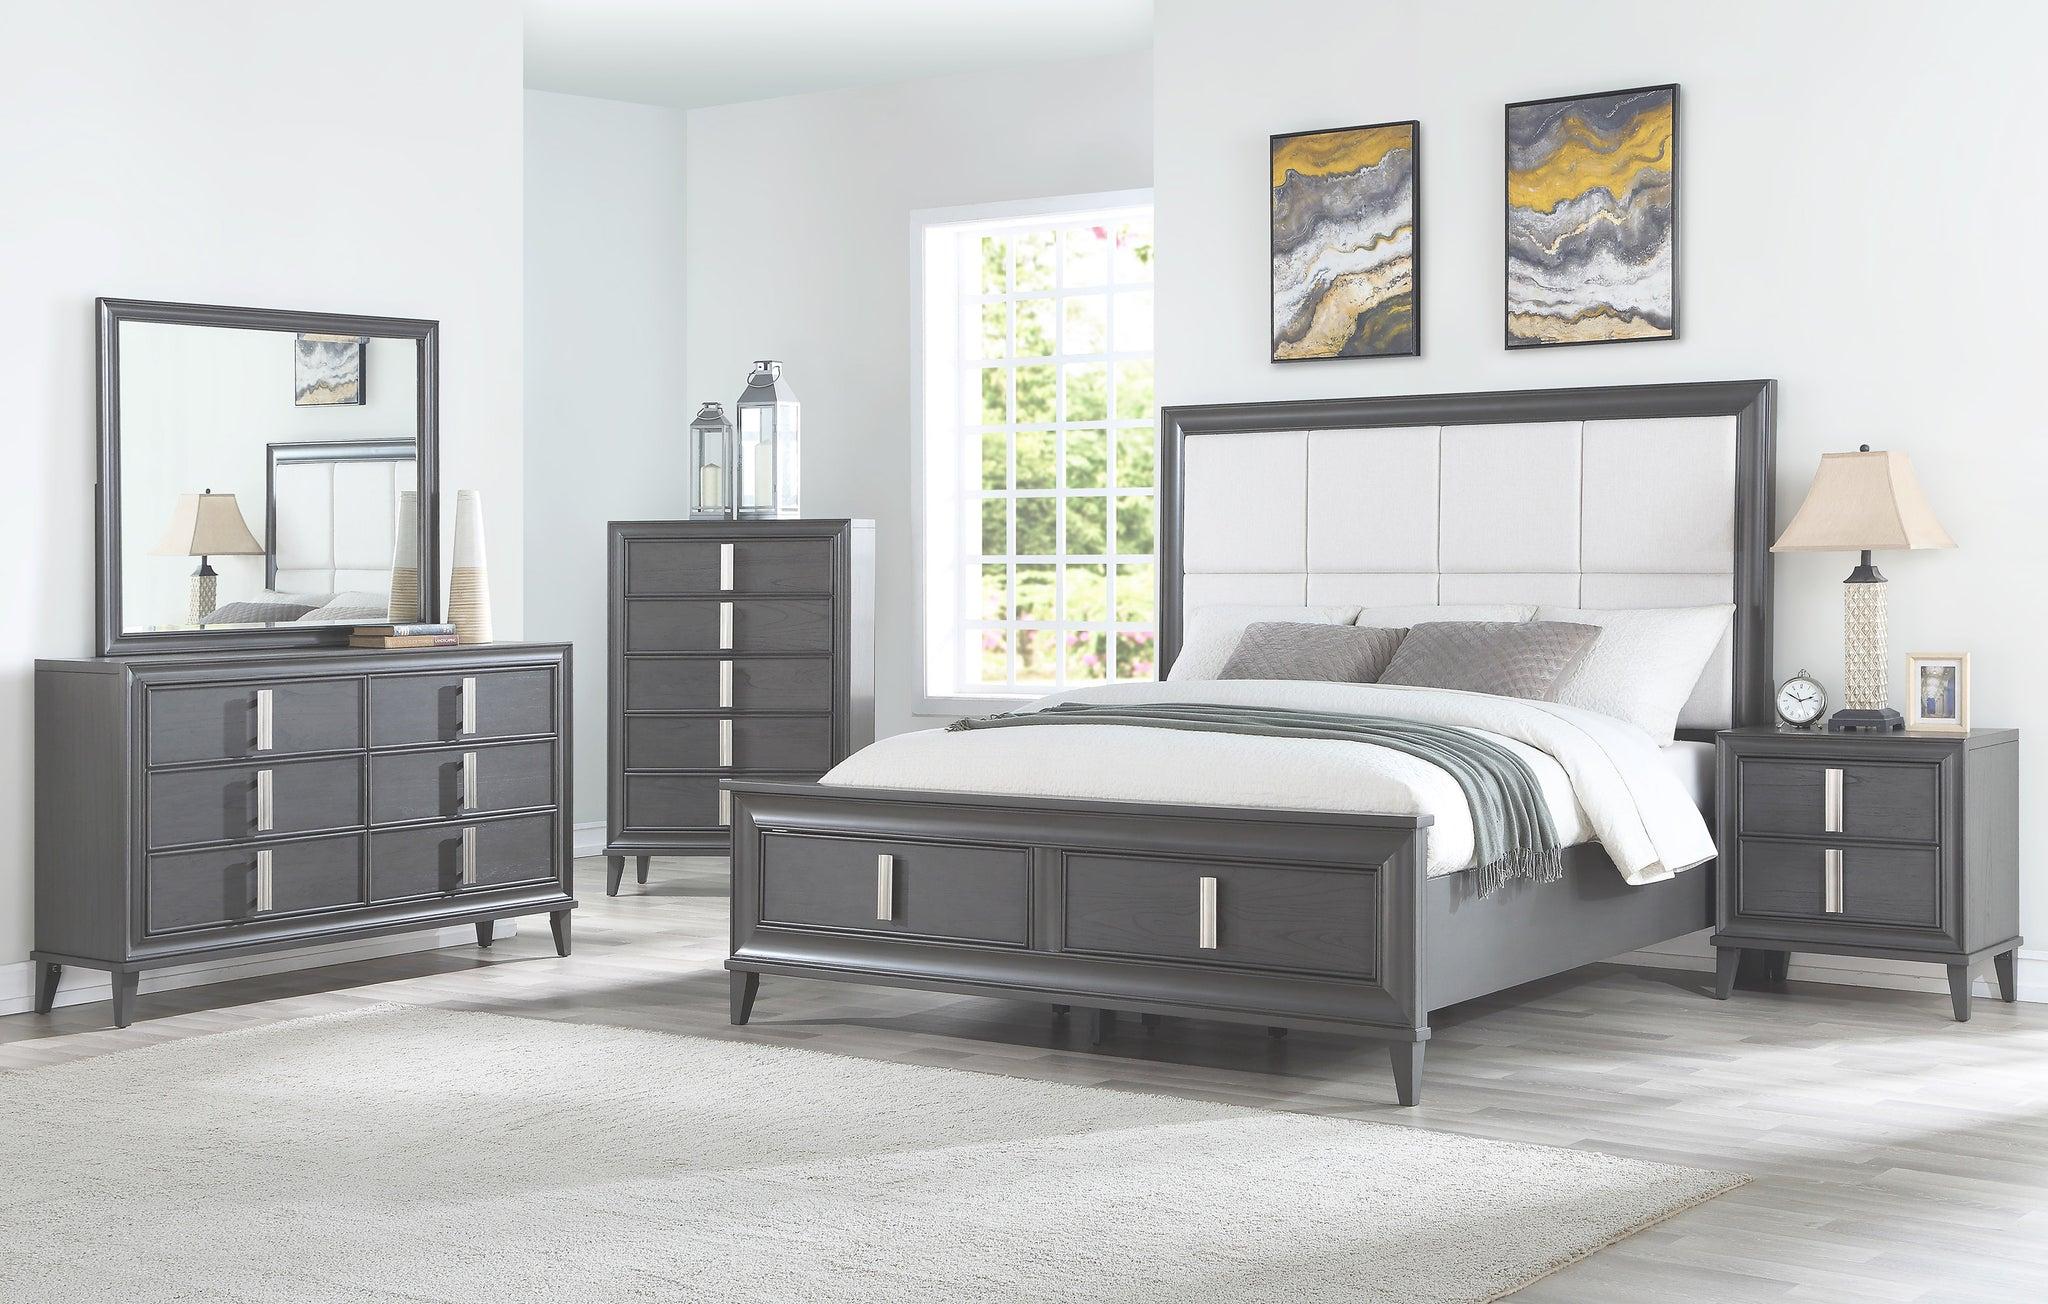 Contemporary, Modern Storage Bedroom Set LORRAINE 8171-01Q-Set-5 in Dark Gray, Cream Fabric